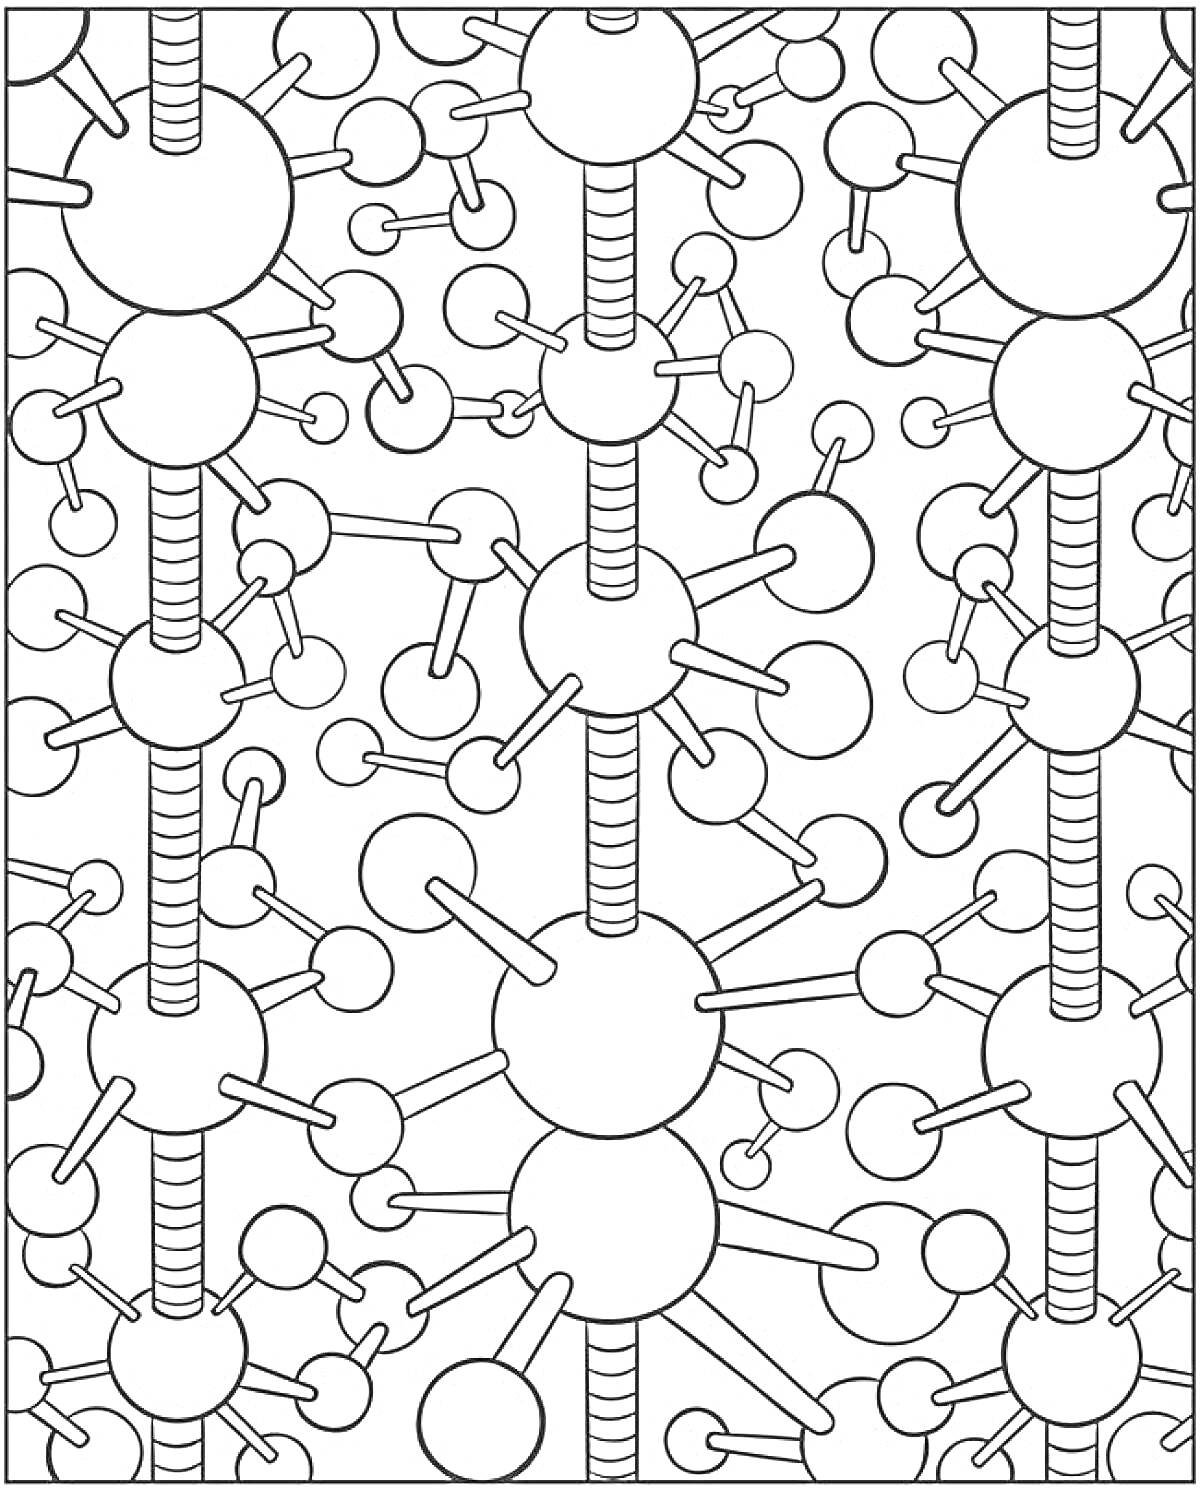 Раскраска Молекулярные узоры с большими и маленькими кругами, соединенными линиями